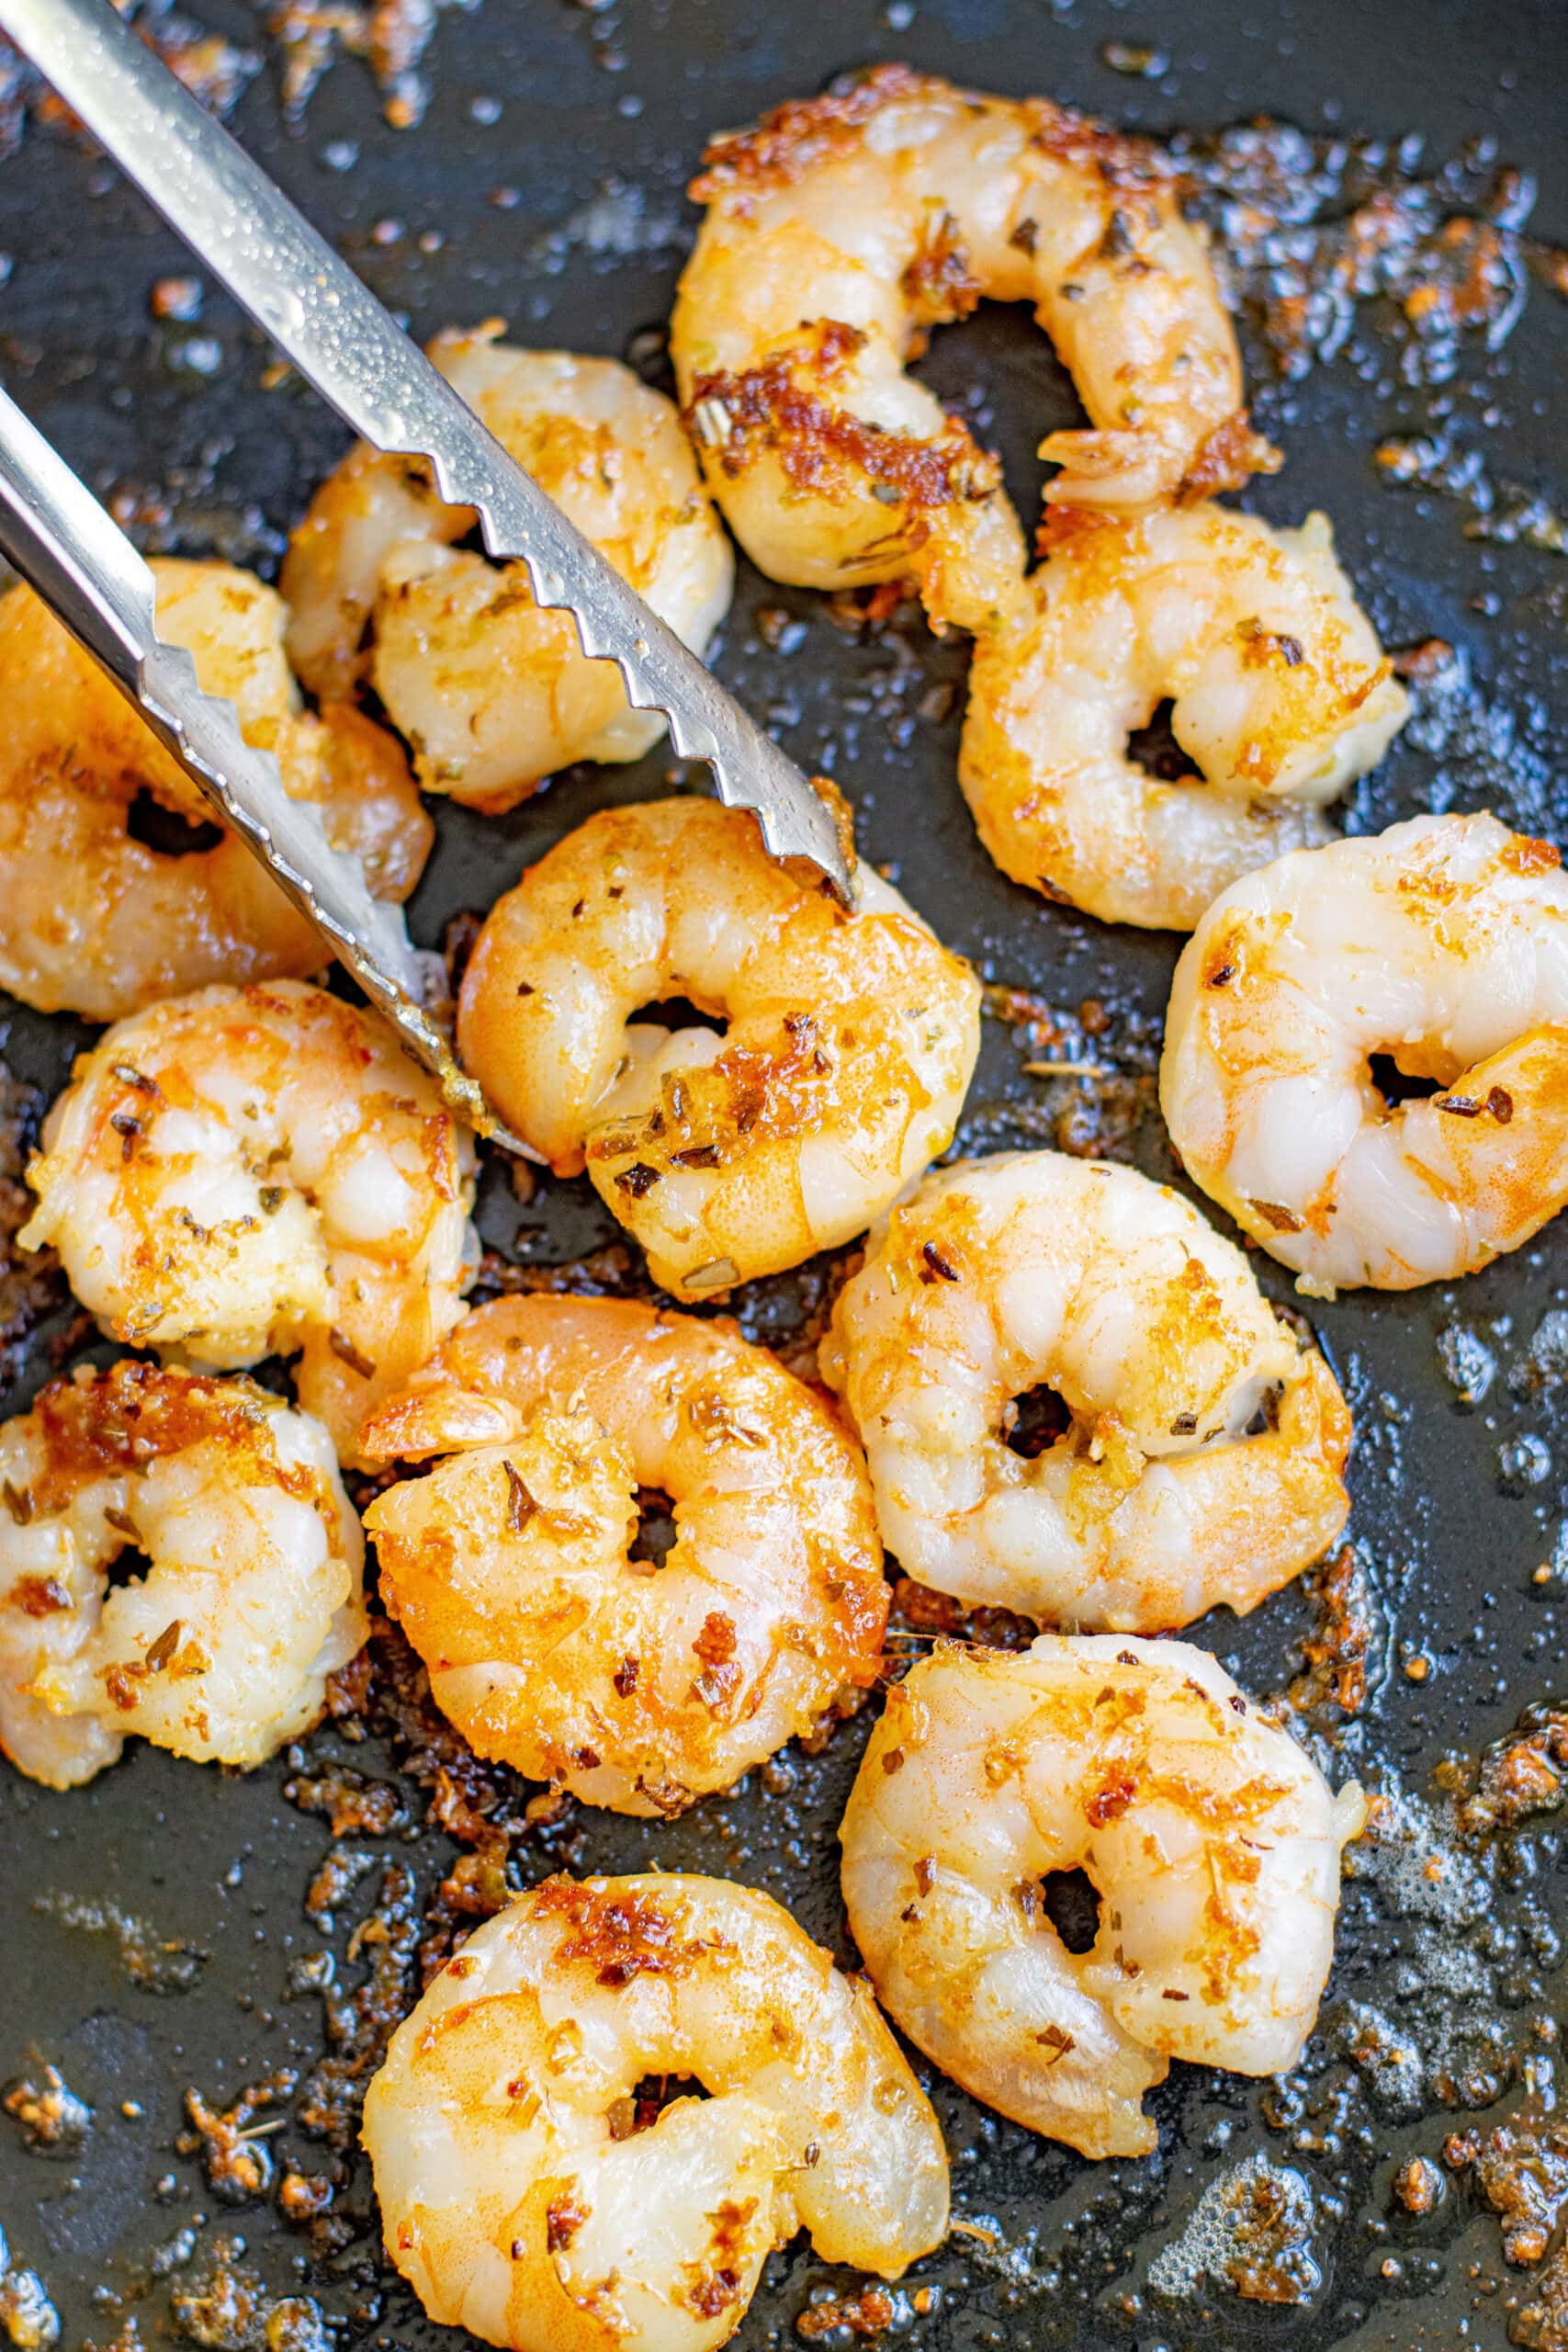 shrimp cooking in a skillet